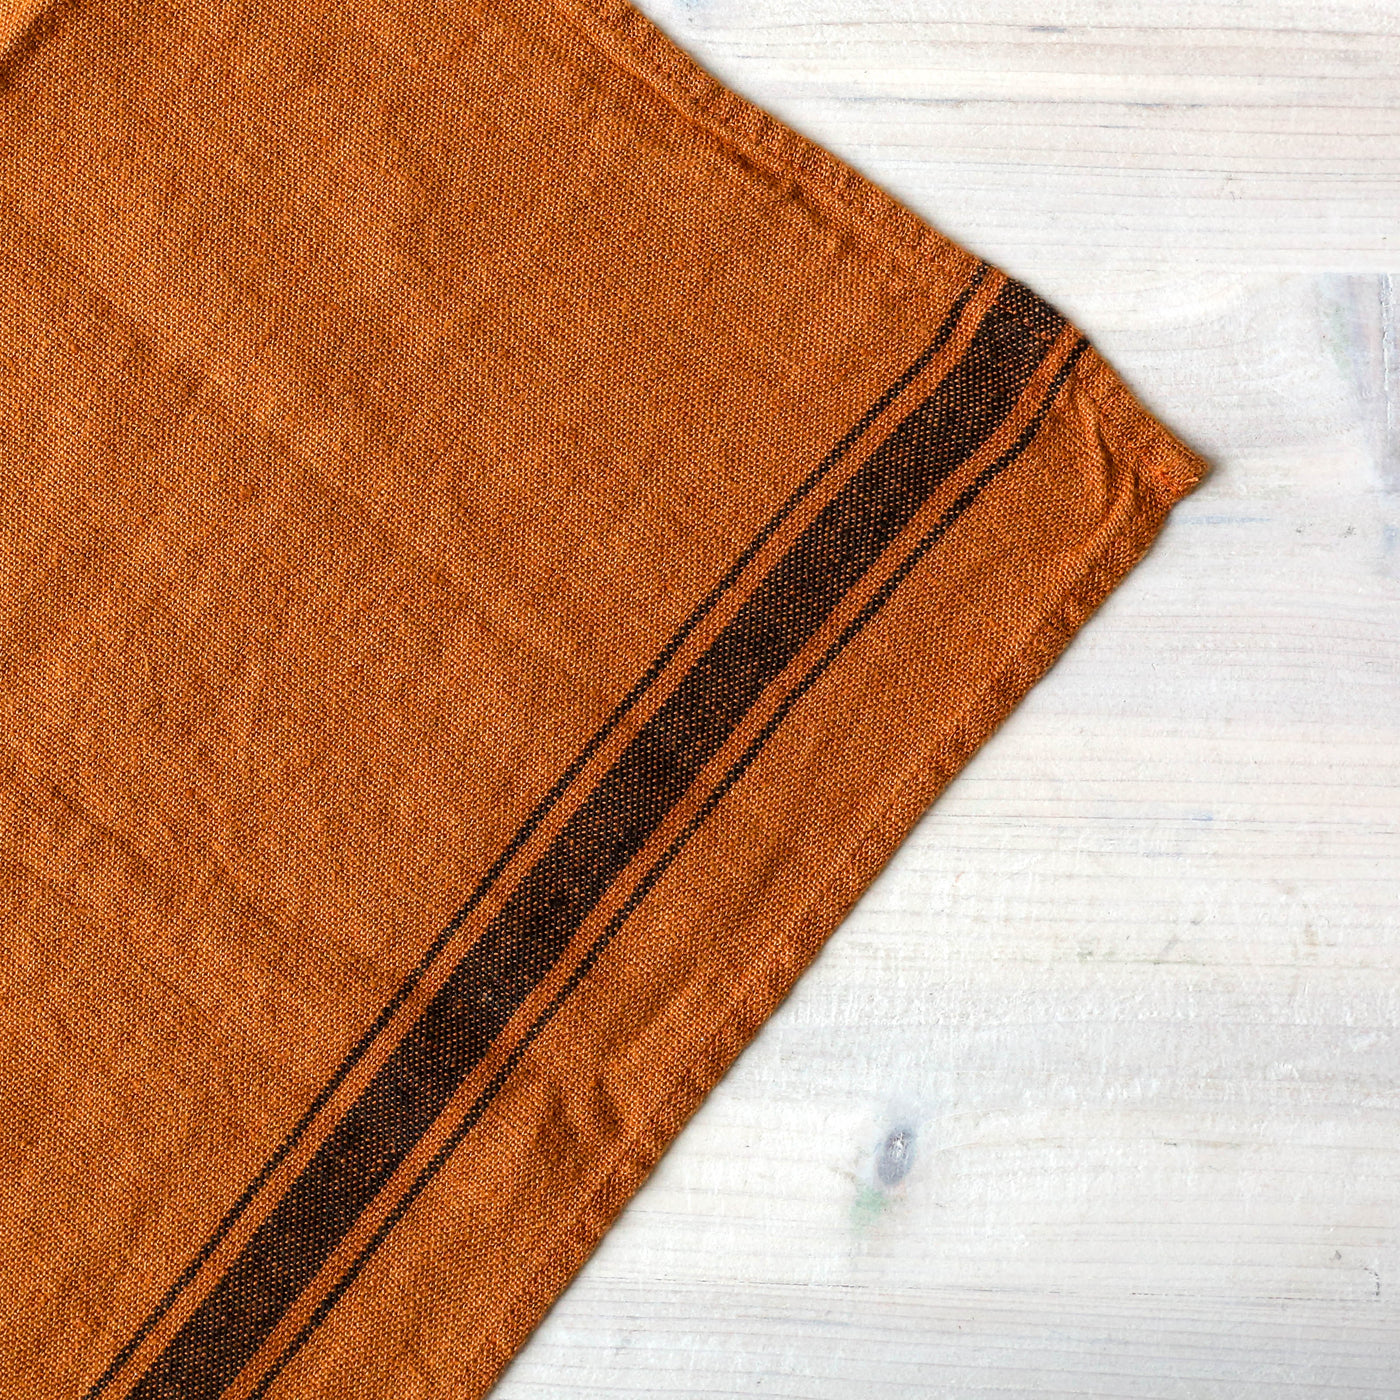 Washed Linen Stripe Tea Towel - Caramel